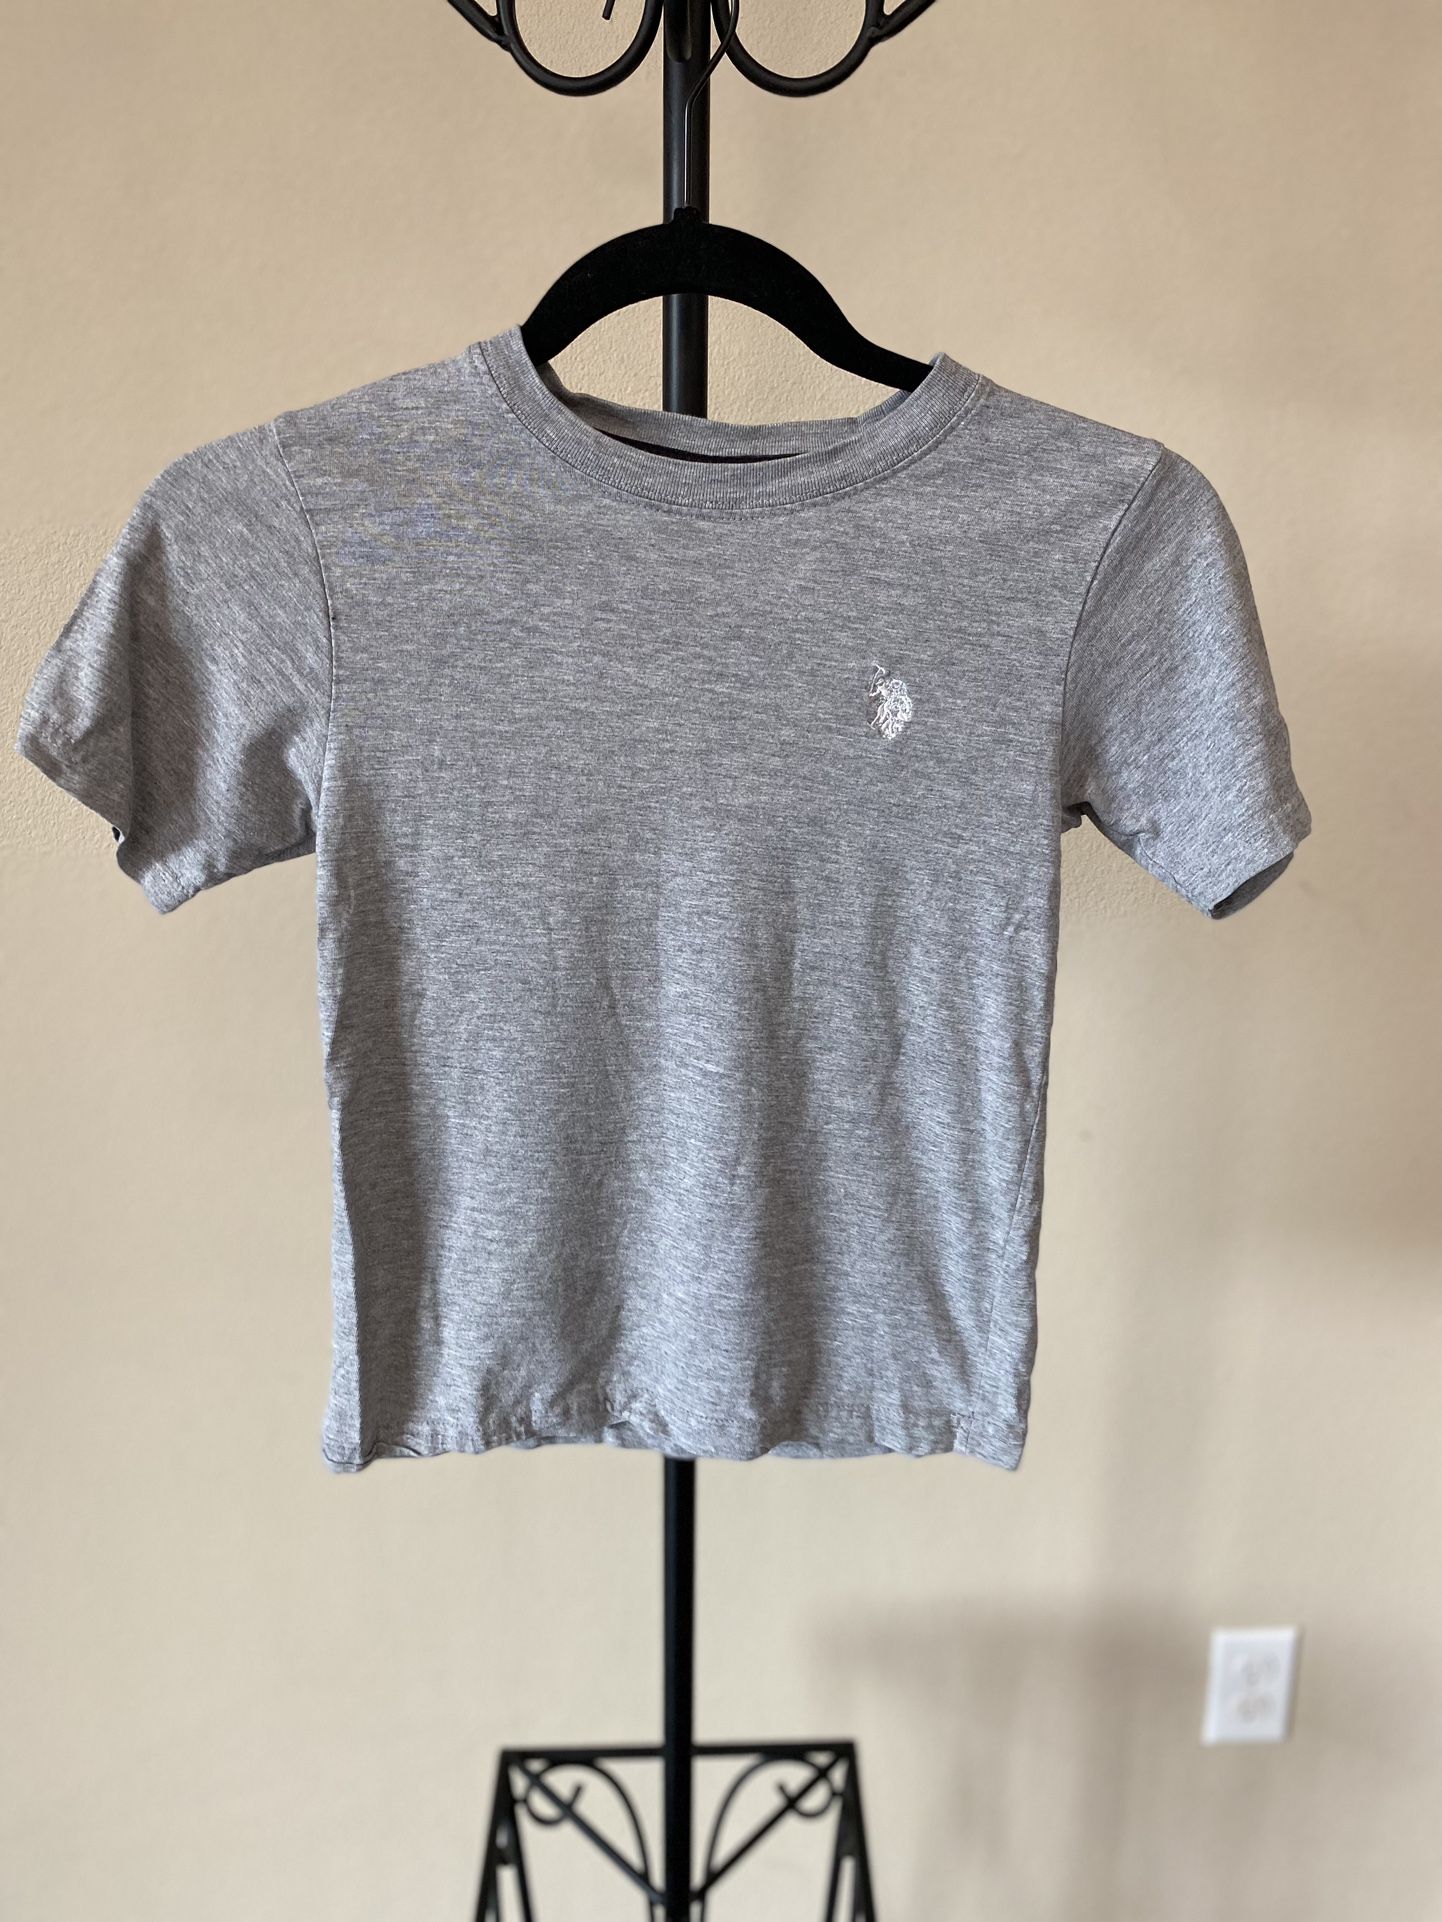 Ralph Lauren Kids Short Sleeve Shirt Gray Tee Size 5/6